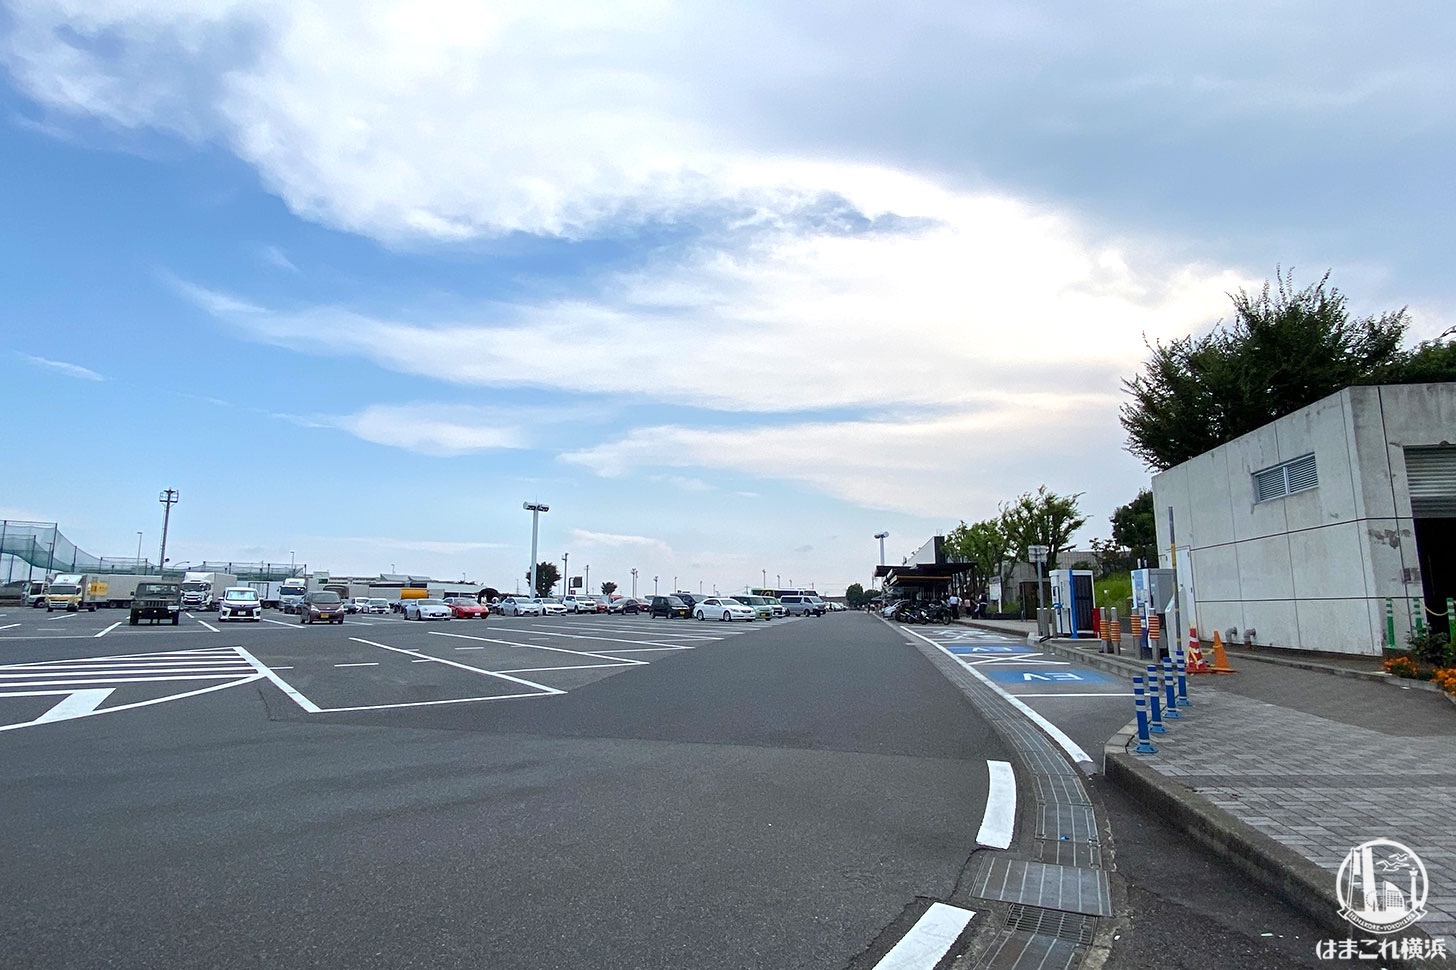 海老名サービスエリアに高速乗らず一般道で行く ぷらっとパーク 使ってみた はまこれ横浜